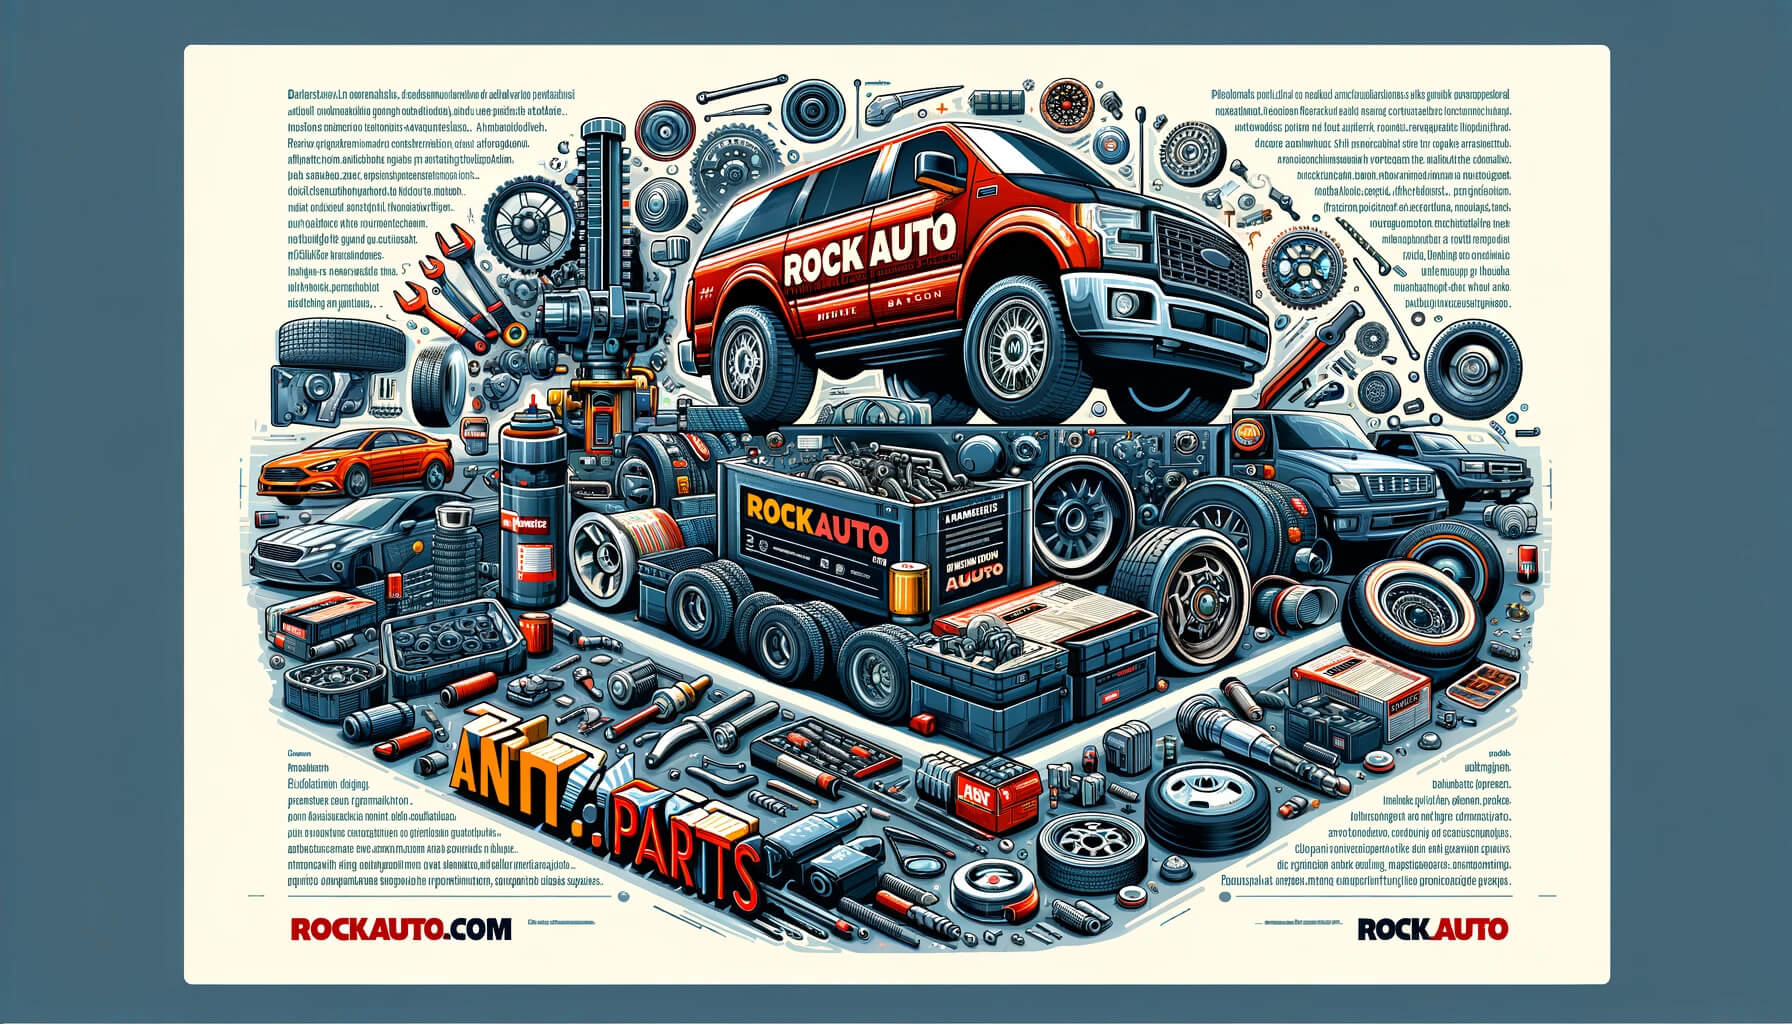 RockAuto.com Online Auto Parts Store